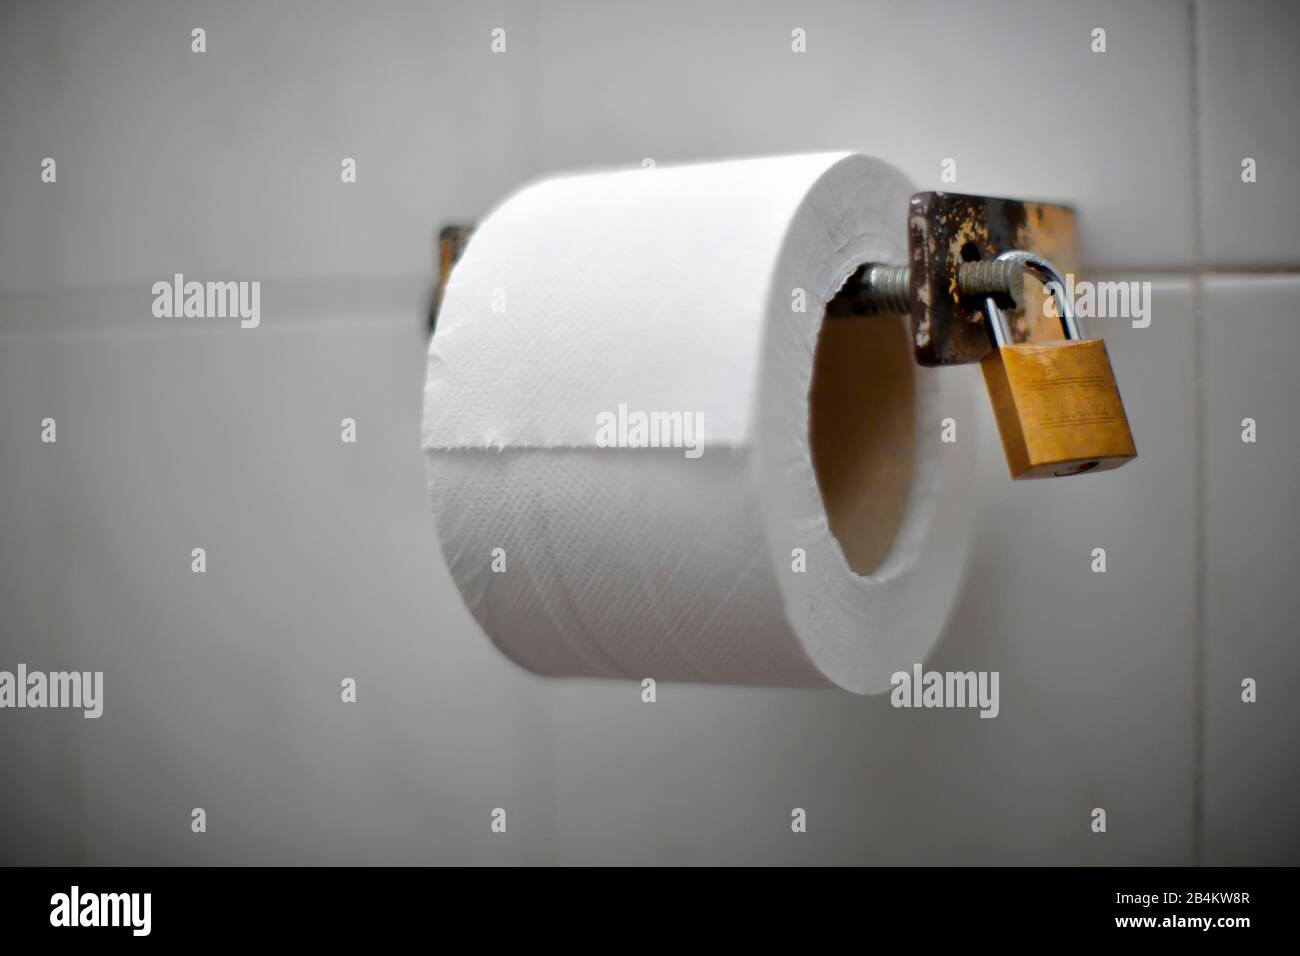 Toilettenpapier Rolle Stockfotos und -bilder Kaufen - Alamy